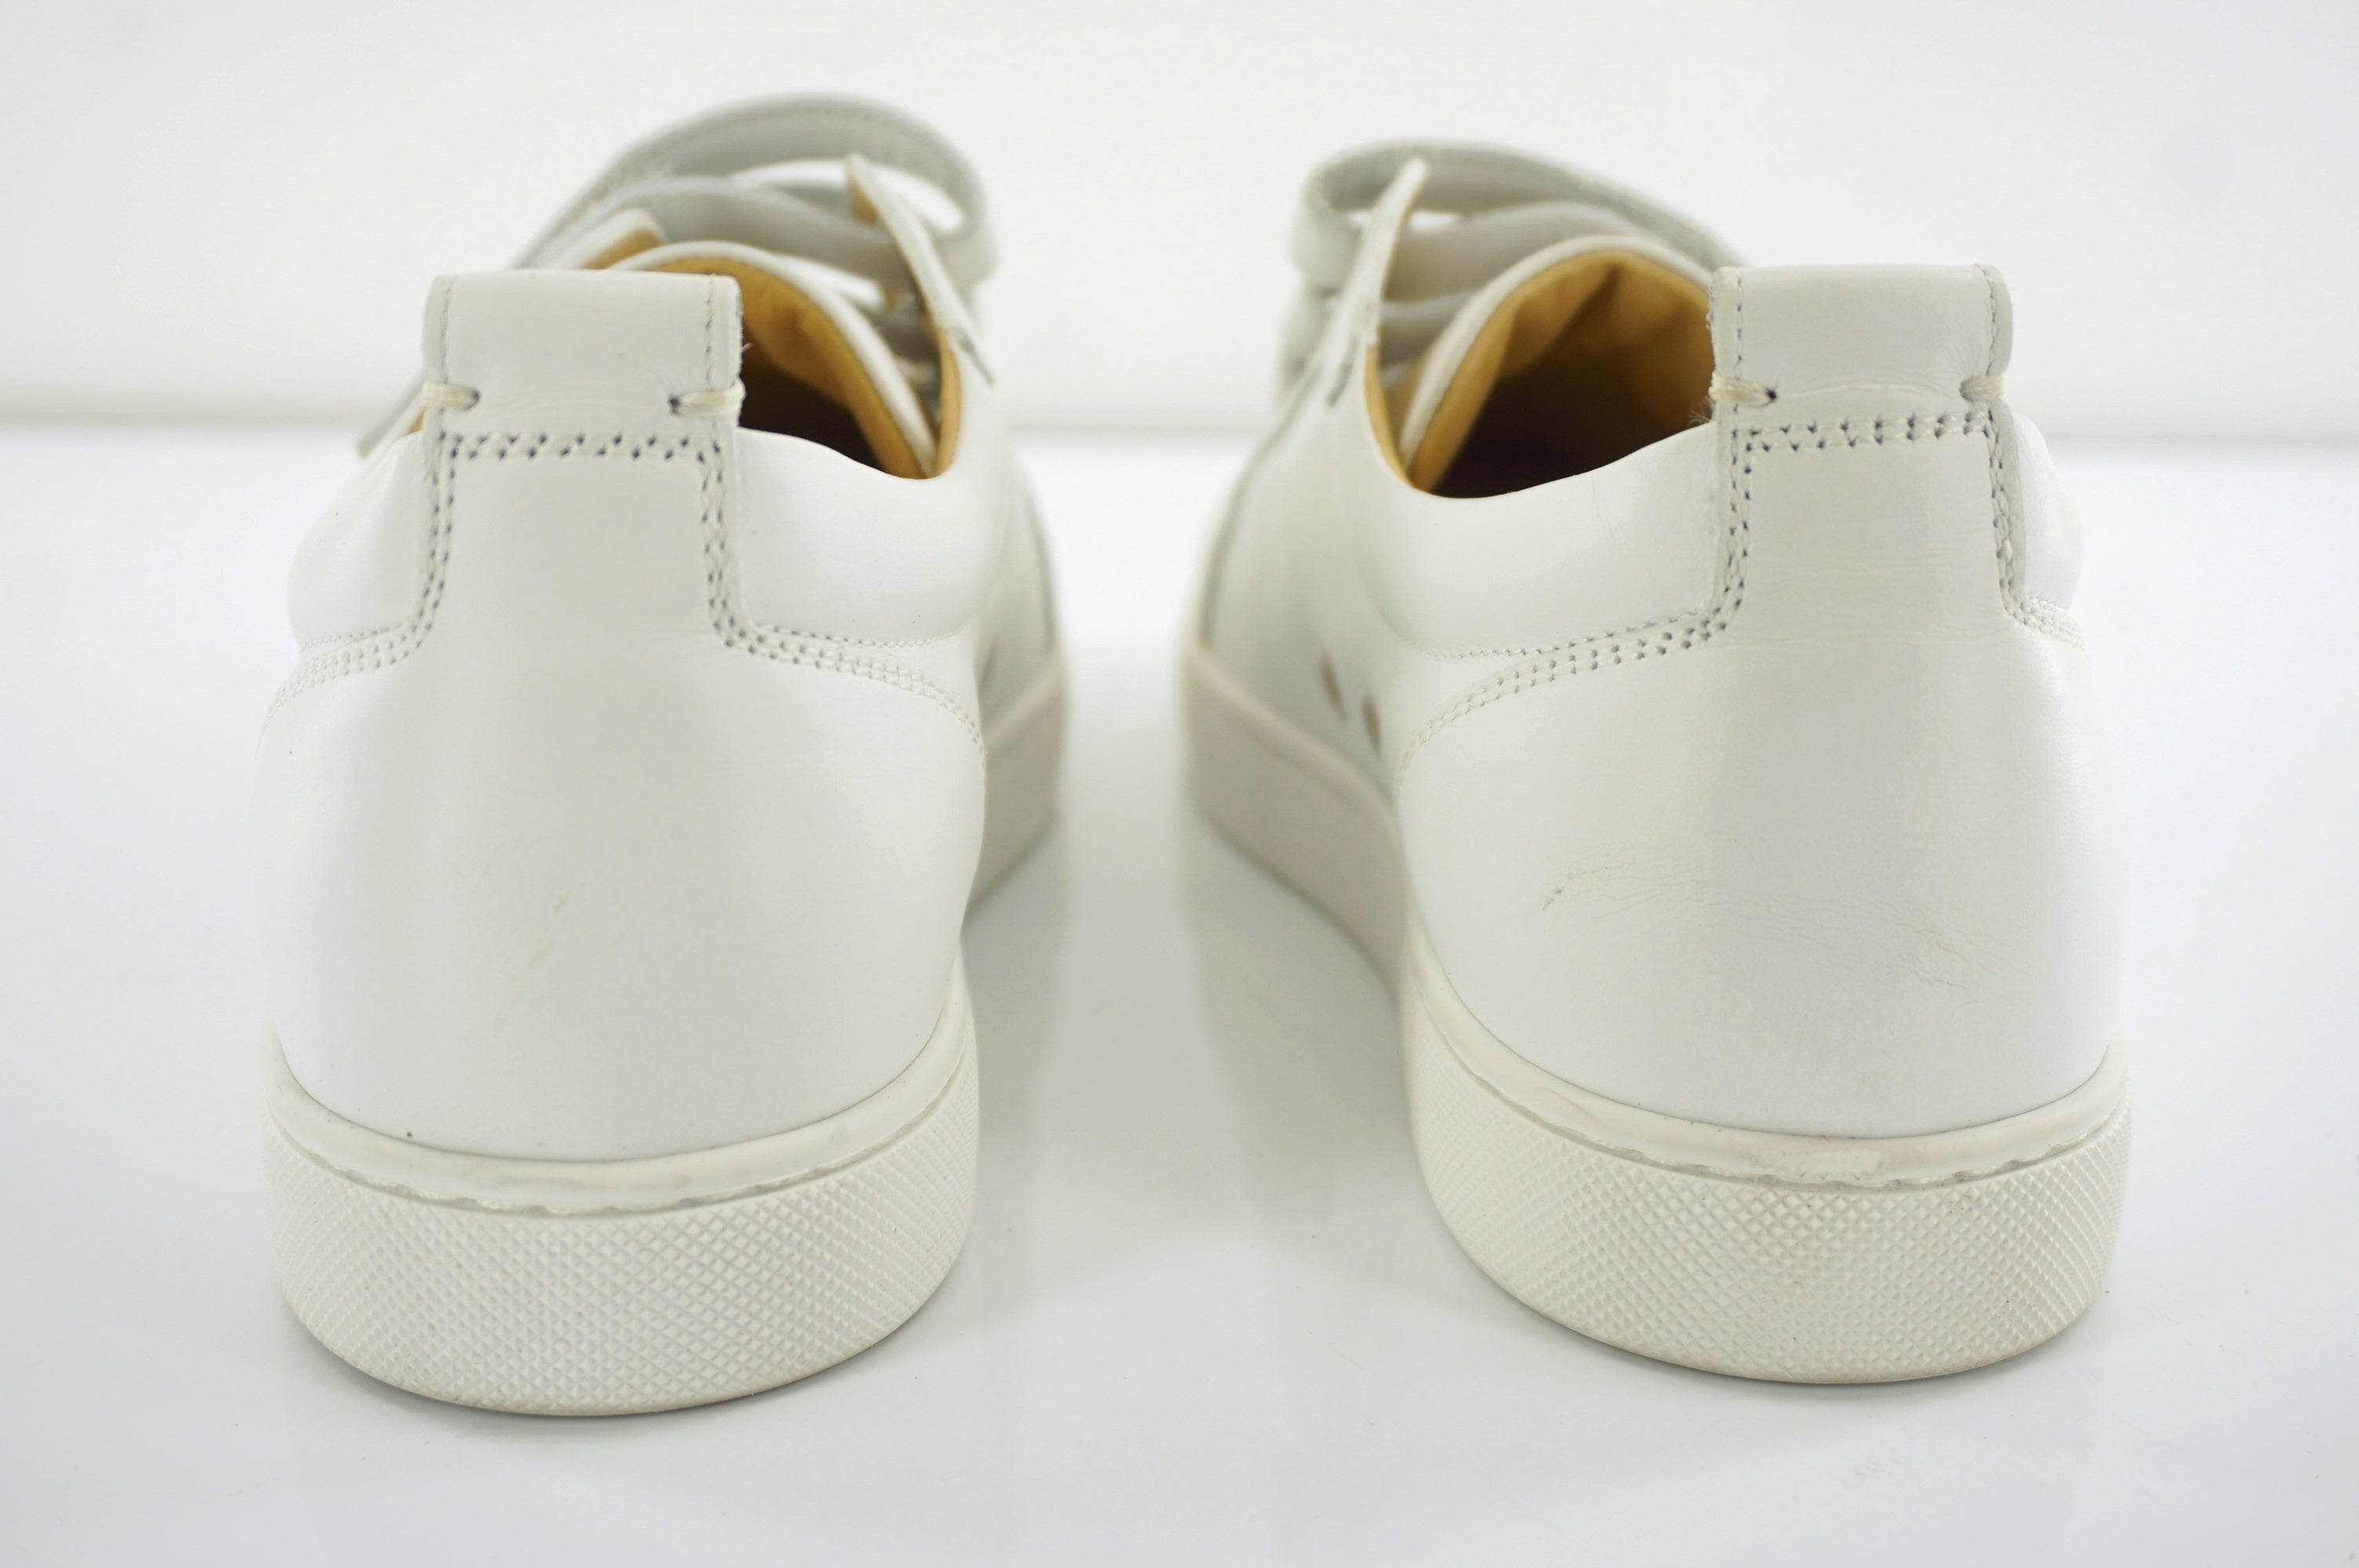 Christian Louboutin Kiddo Donna Three Strap Leather Sneakers SZ 37 White $745